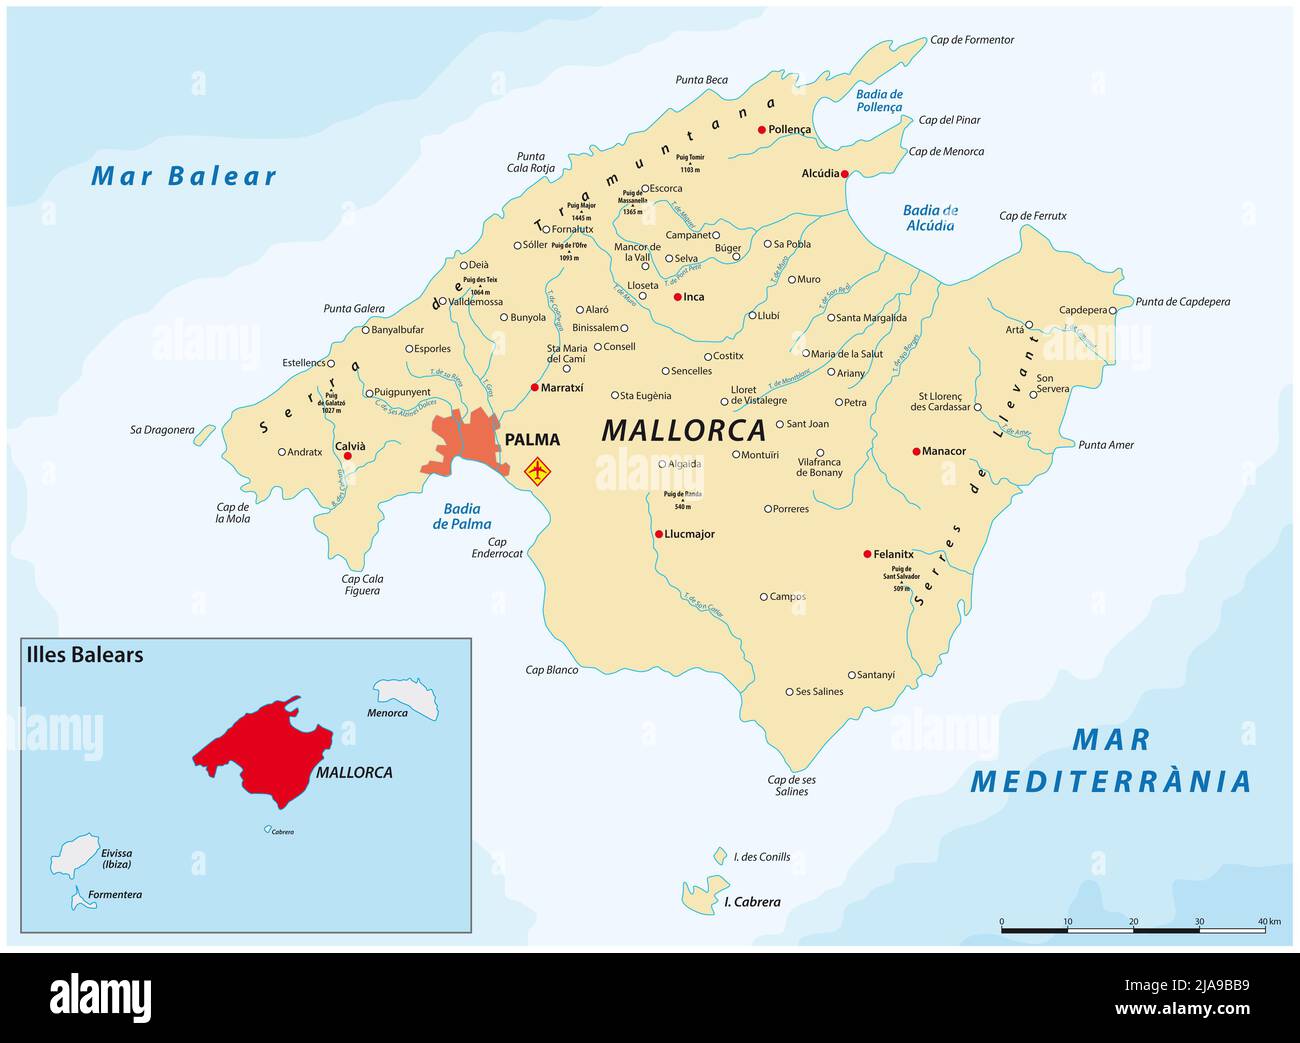 Carte vectorielle de l'île méditerranéenne espagnole de Majorque Banque D'Images